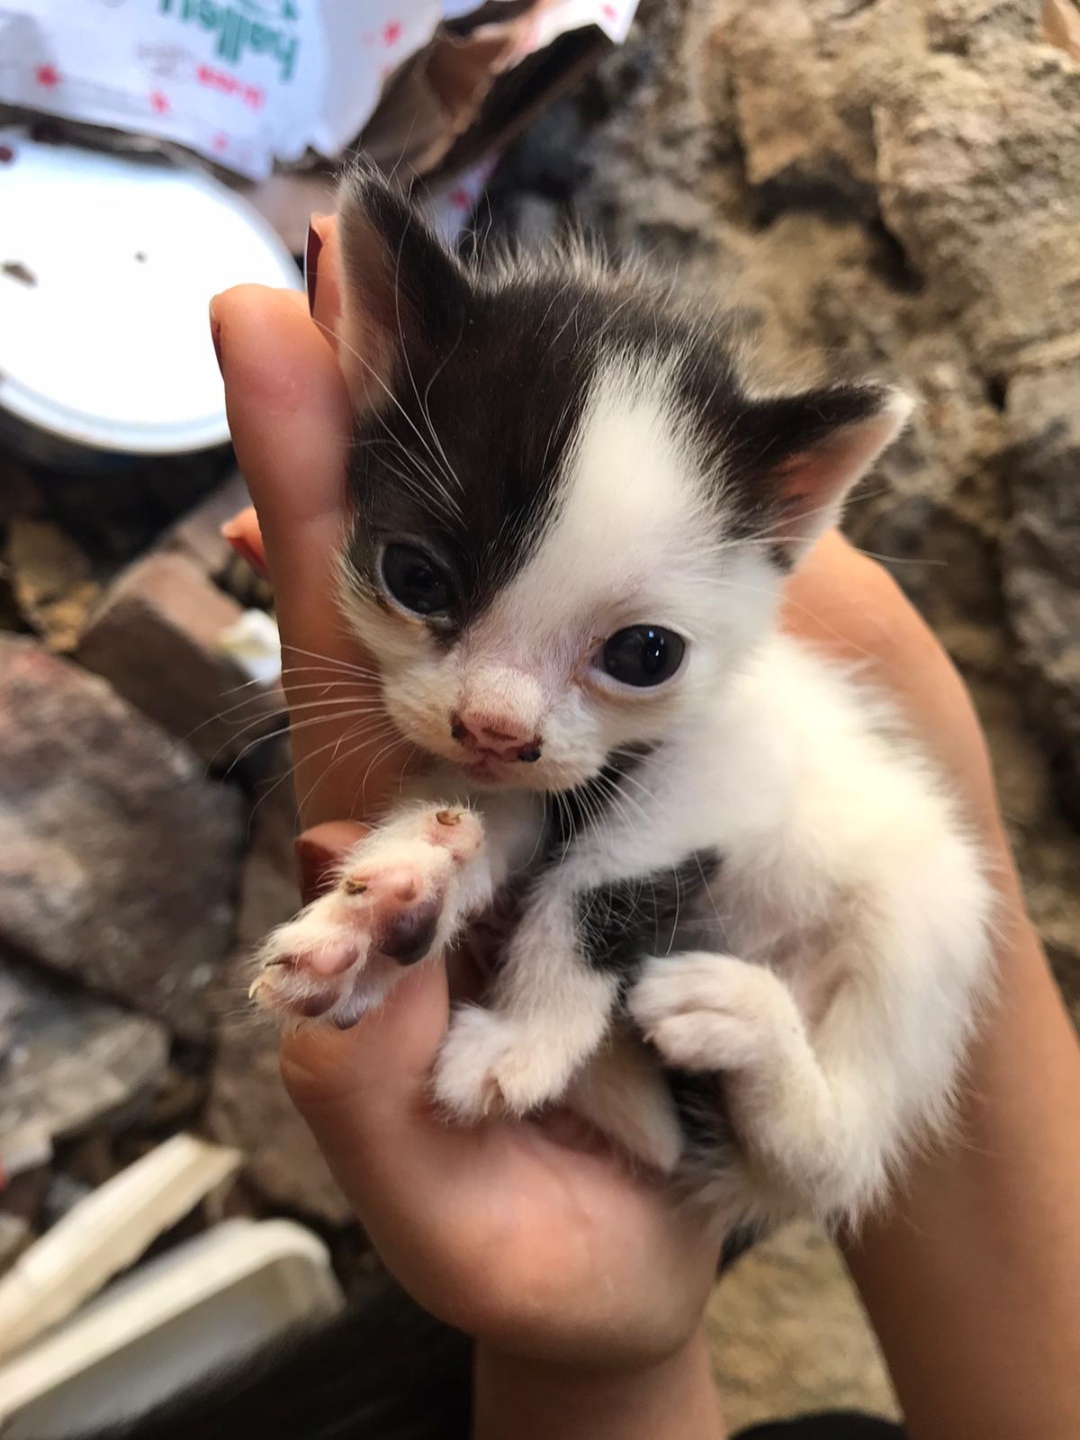 minik bebekler yuv, Ücretsiz Kedi, İzmir